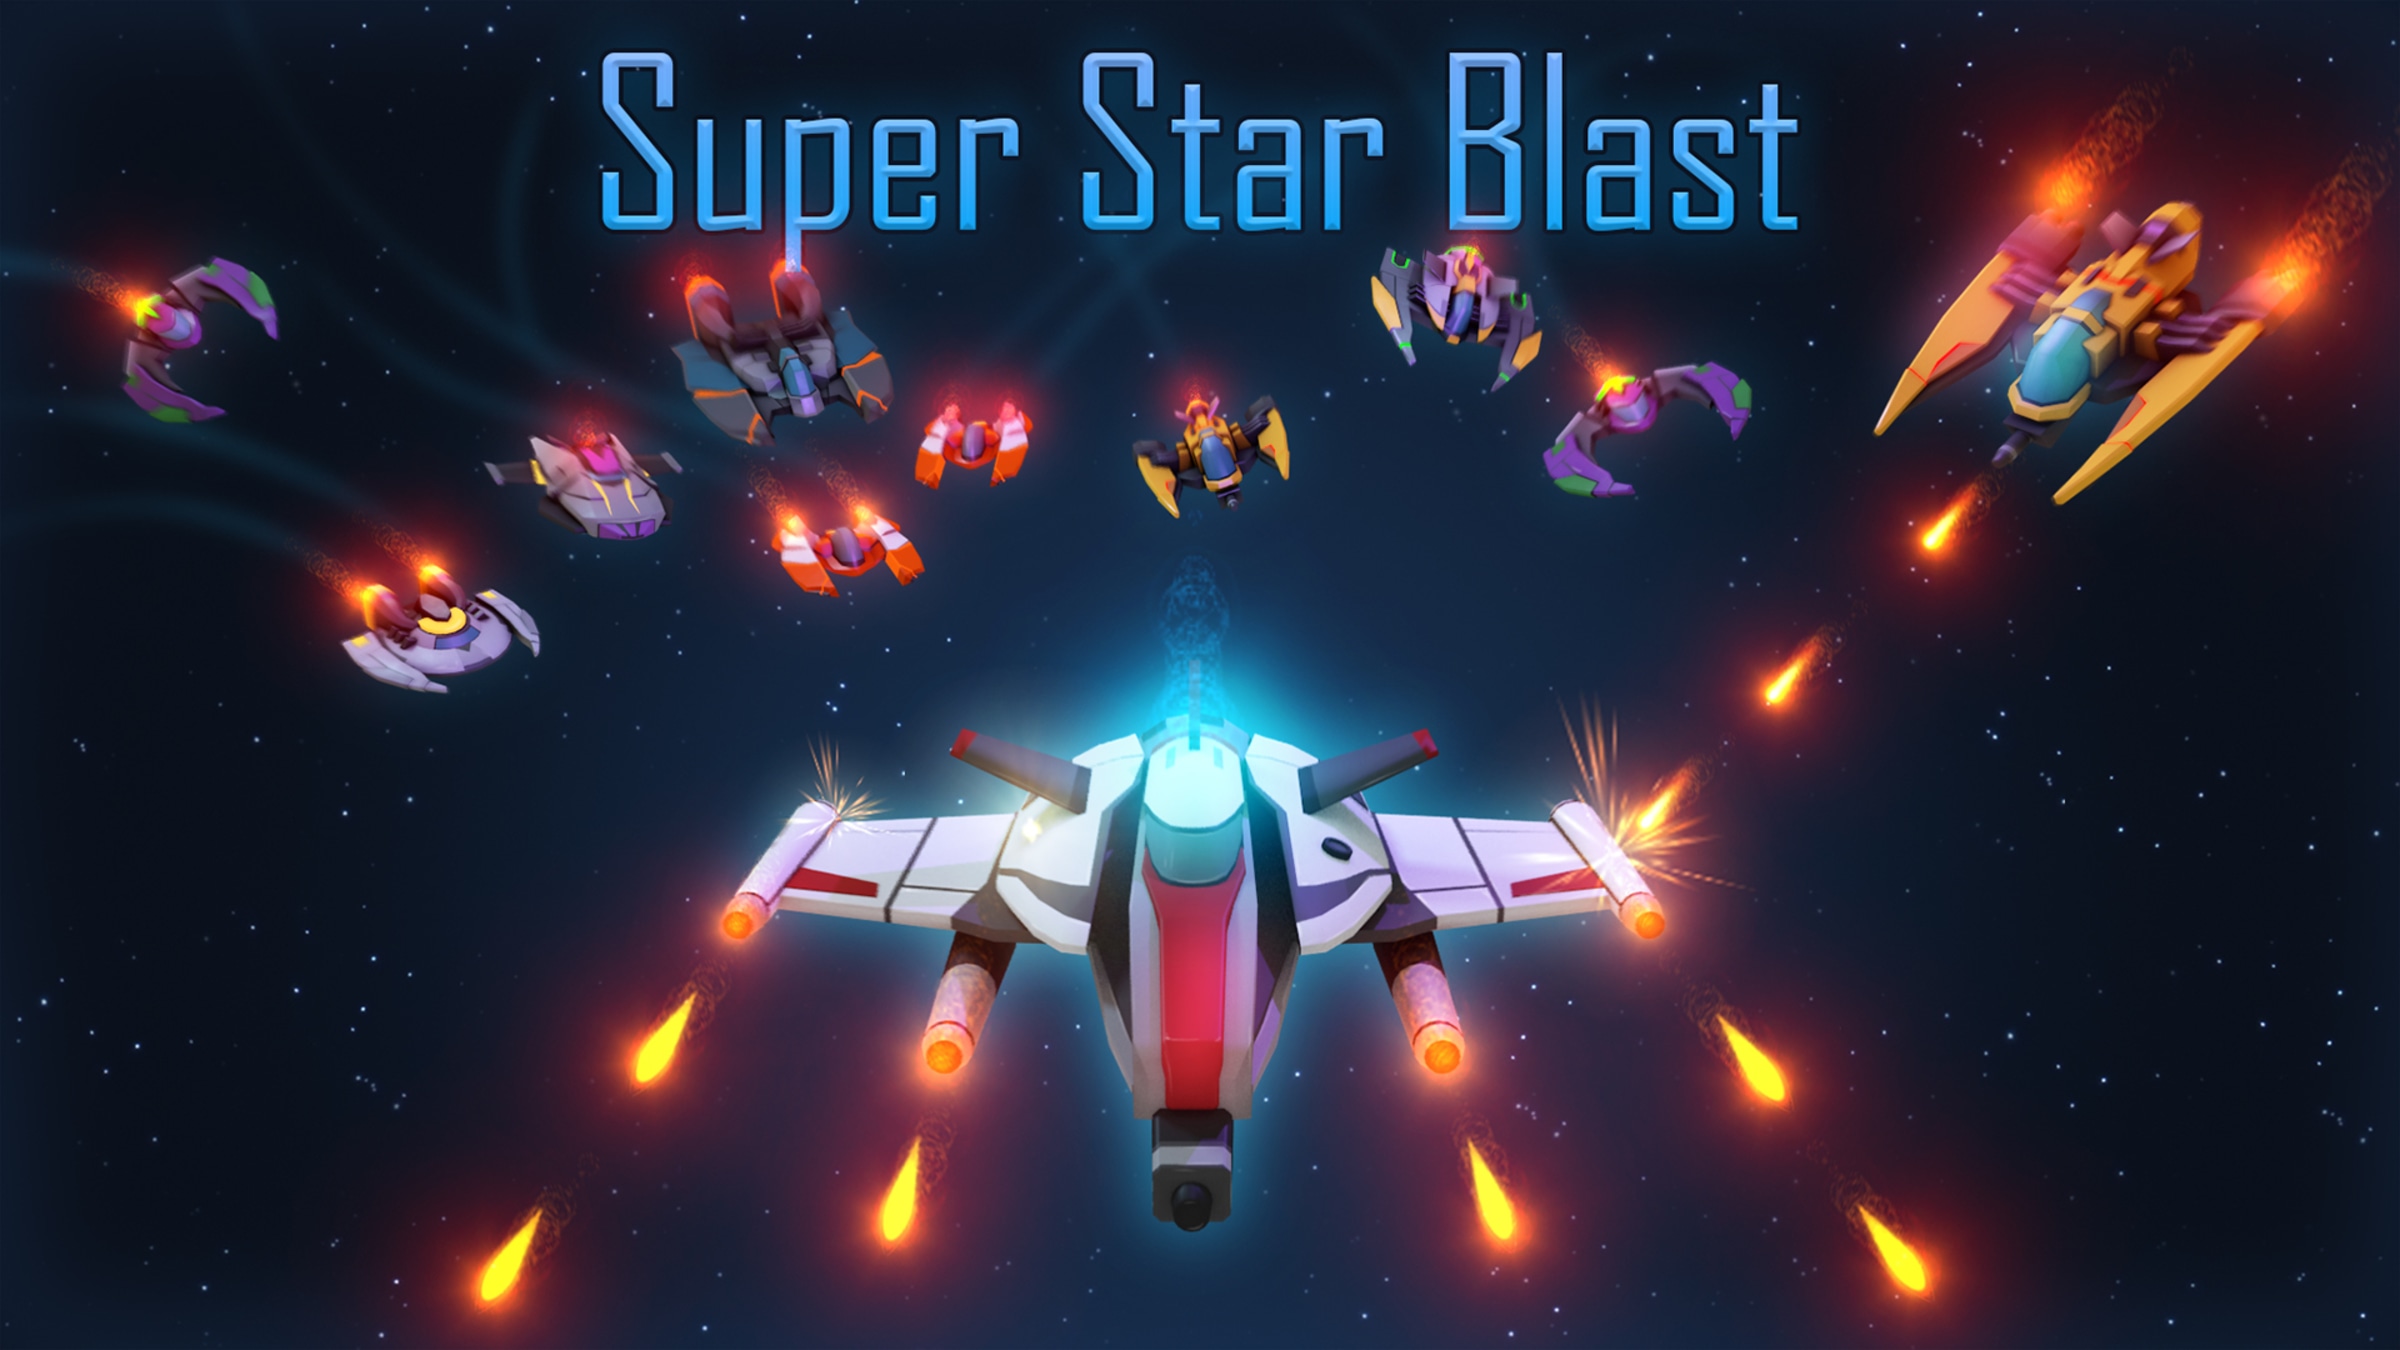 What Are Starblast.io Ships? - Starblast.io Game Guide